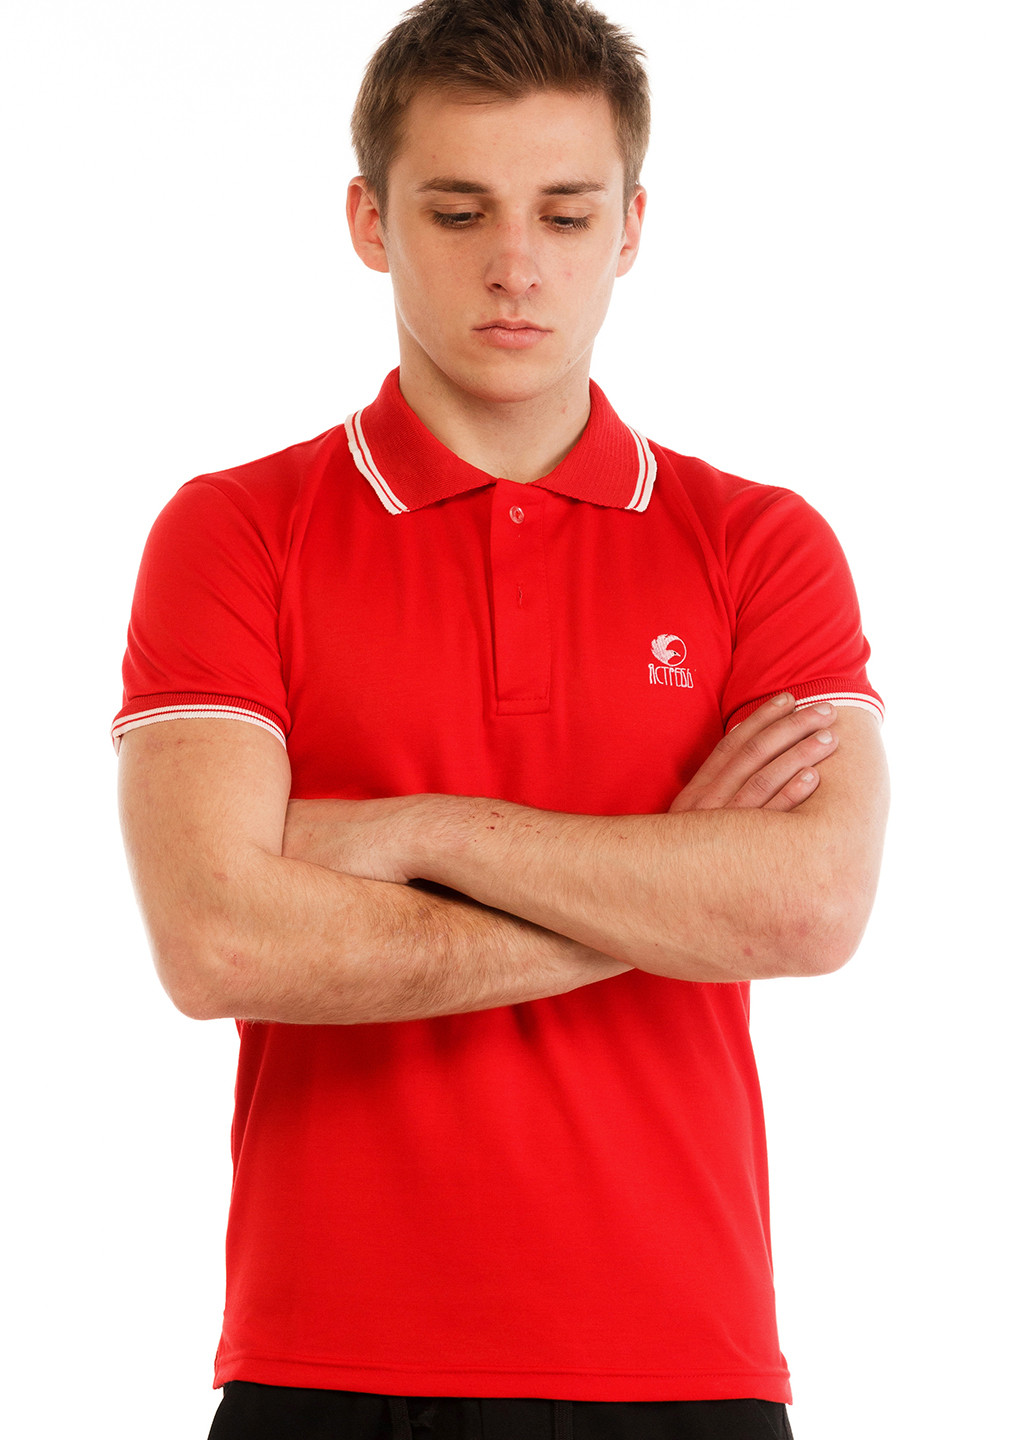 Красная футболка-поло для мужчин Ястребь однотонная